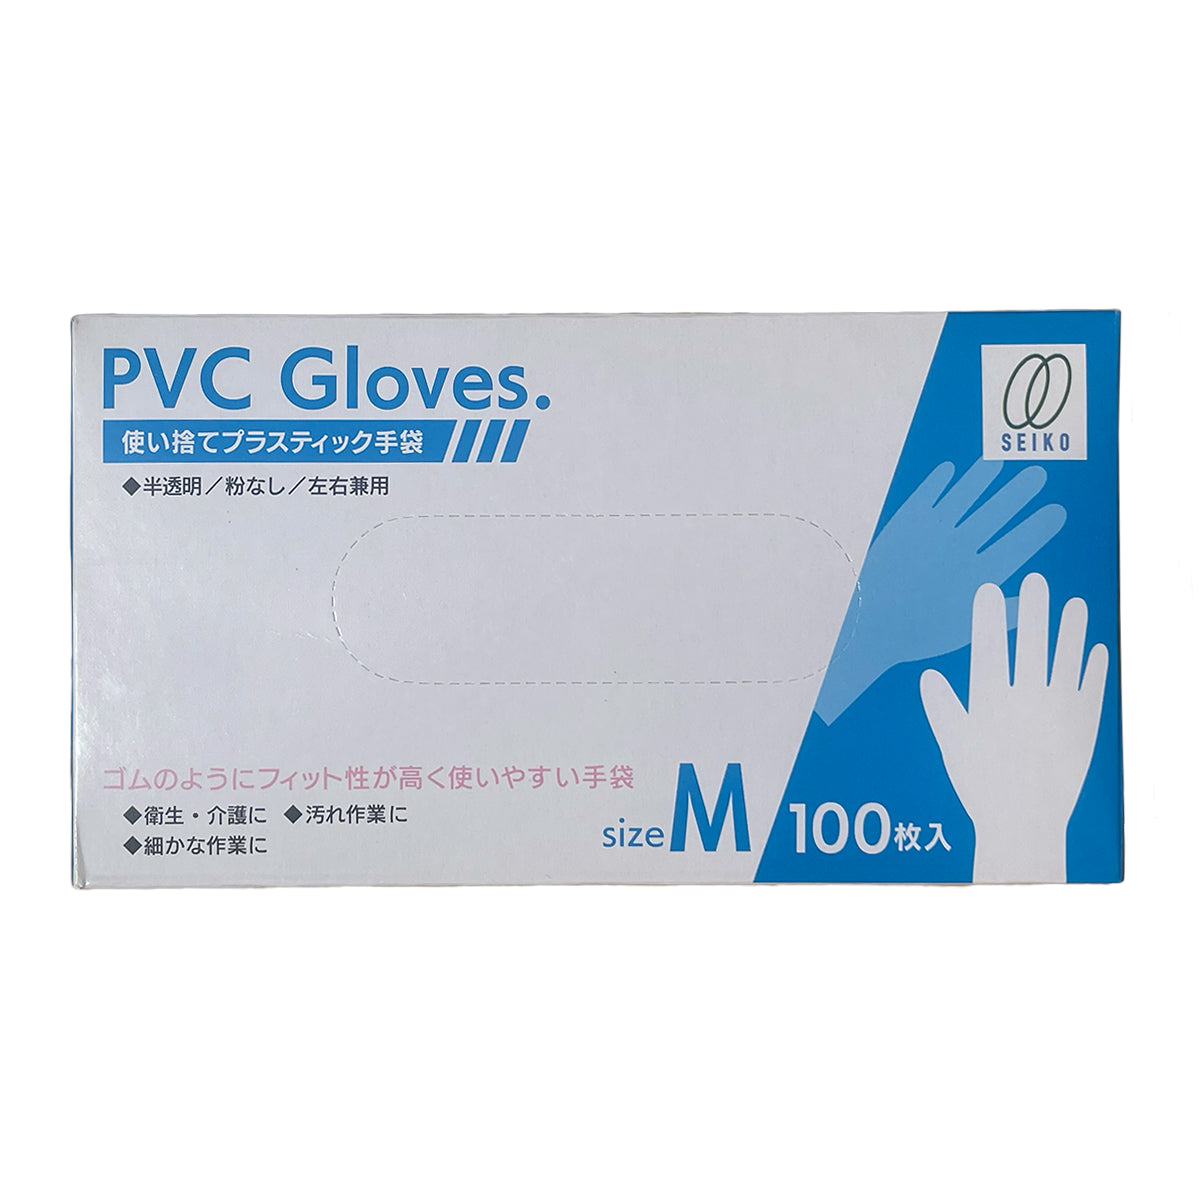 【プラスチック手袋】静光産業 PVCプラスチック手袋 100枚入 M 透明